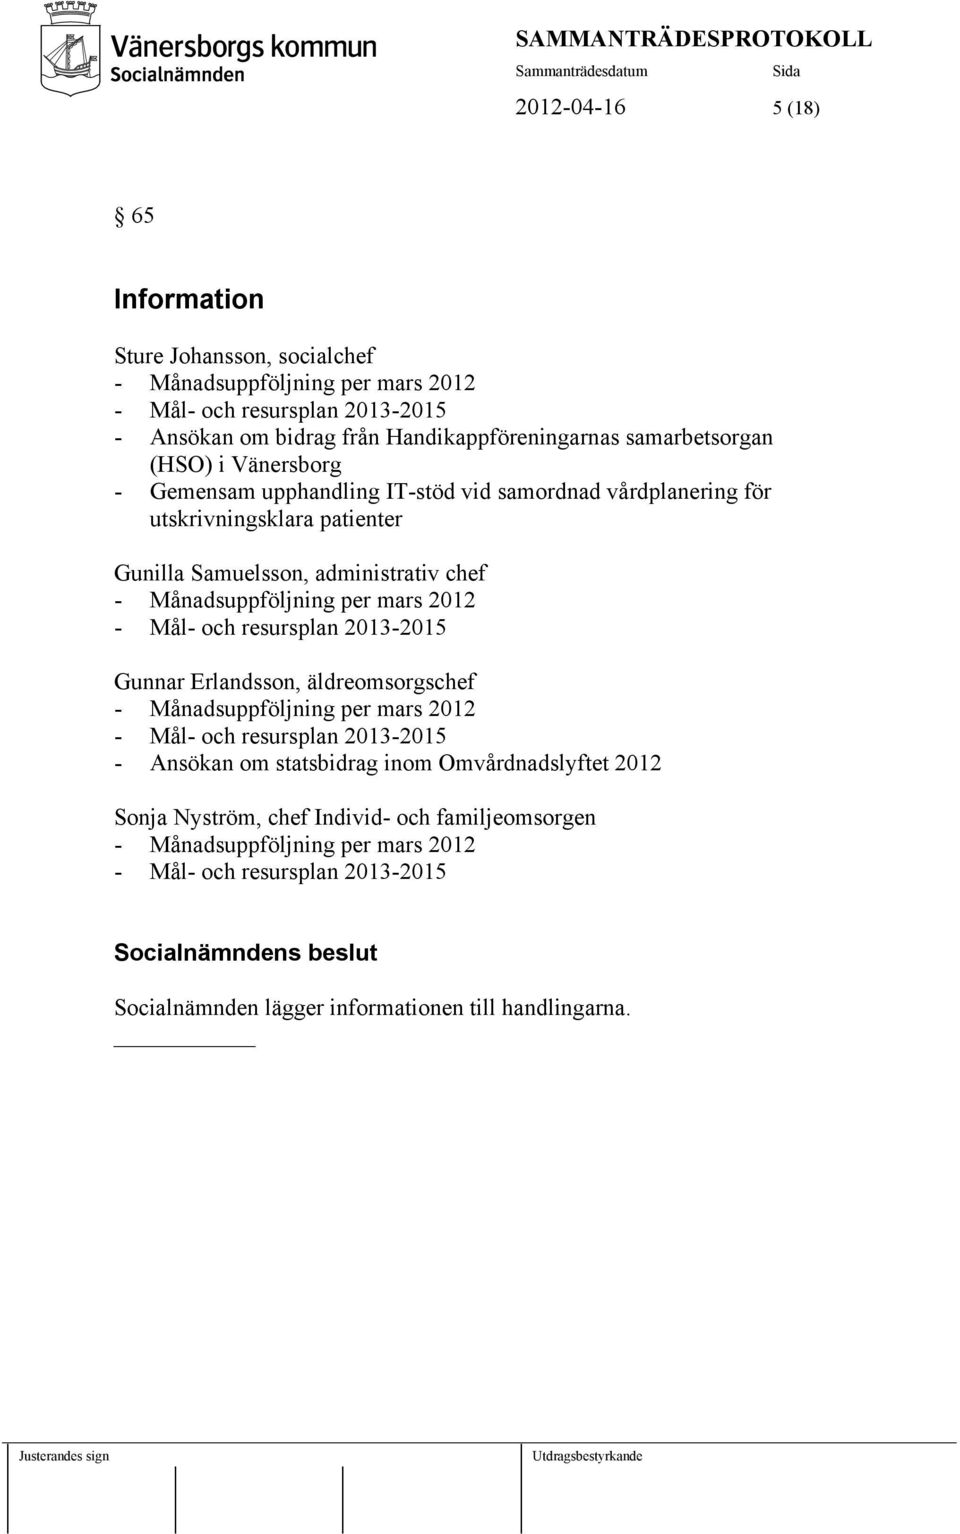 Månadsuppföljning per mars 2012 - Mål- och resursplan 2013-2015 Gunnar Erlandsson, äldreomsorgschef - Månadsuppföljning per mars 2012 - Mål- och resursplan 2013-2015 - Ansökan om